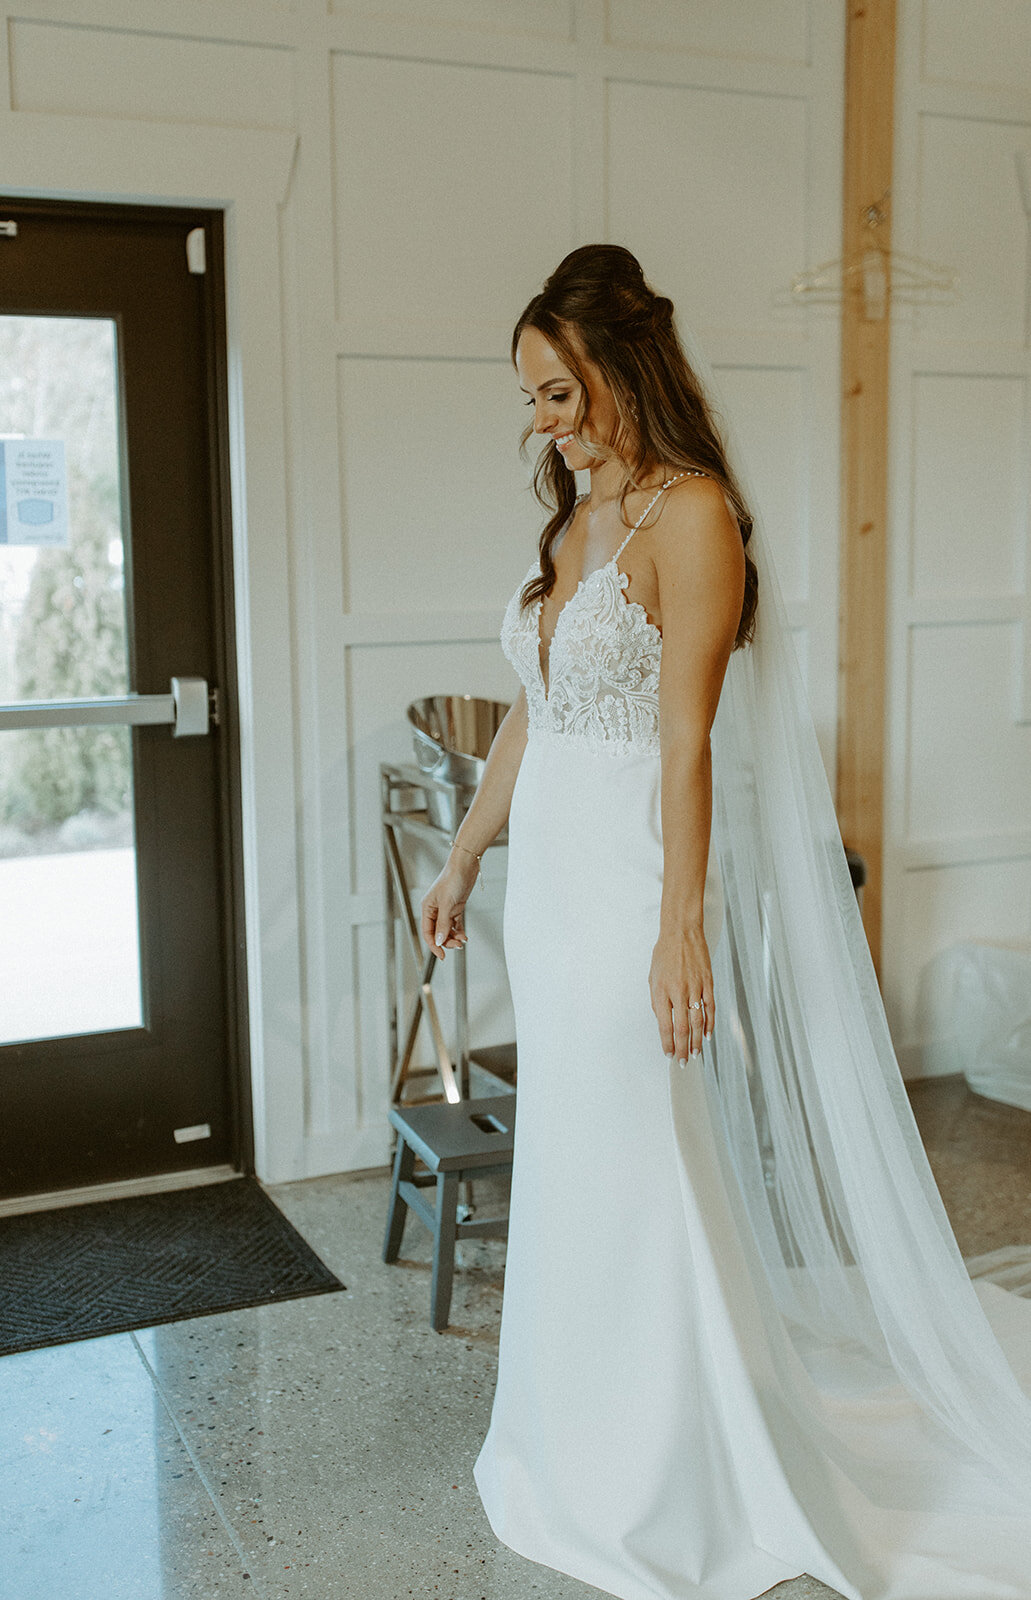 Made-With-Love-Sienna-Wedding-Dress-Nicole-and-Blake-05.jpg